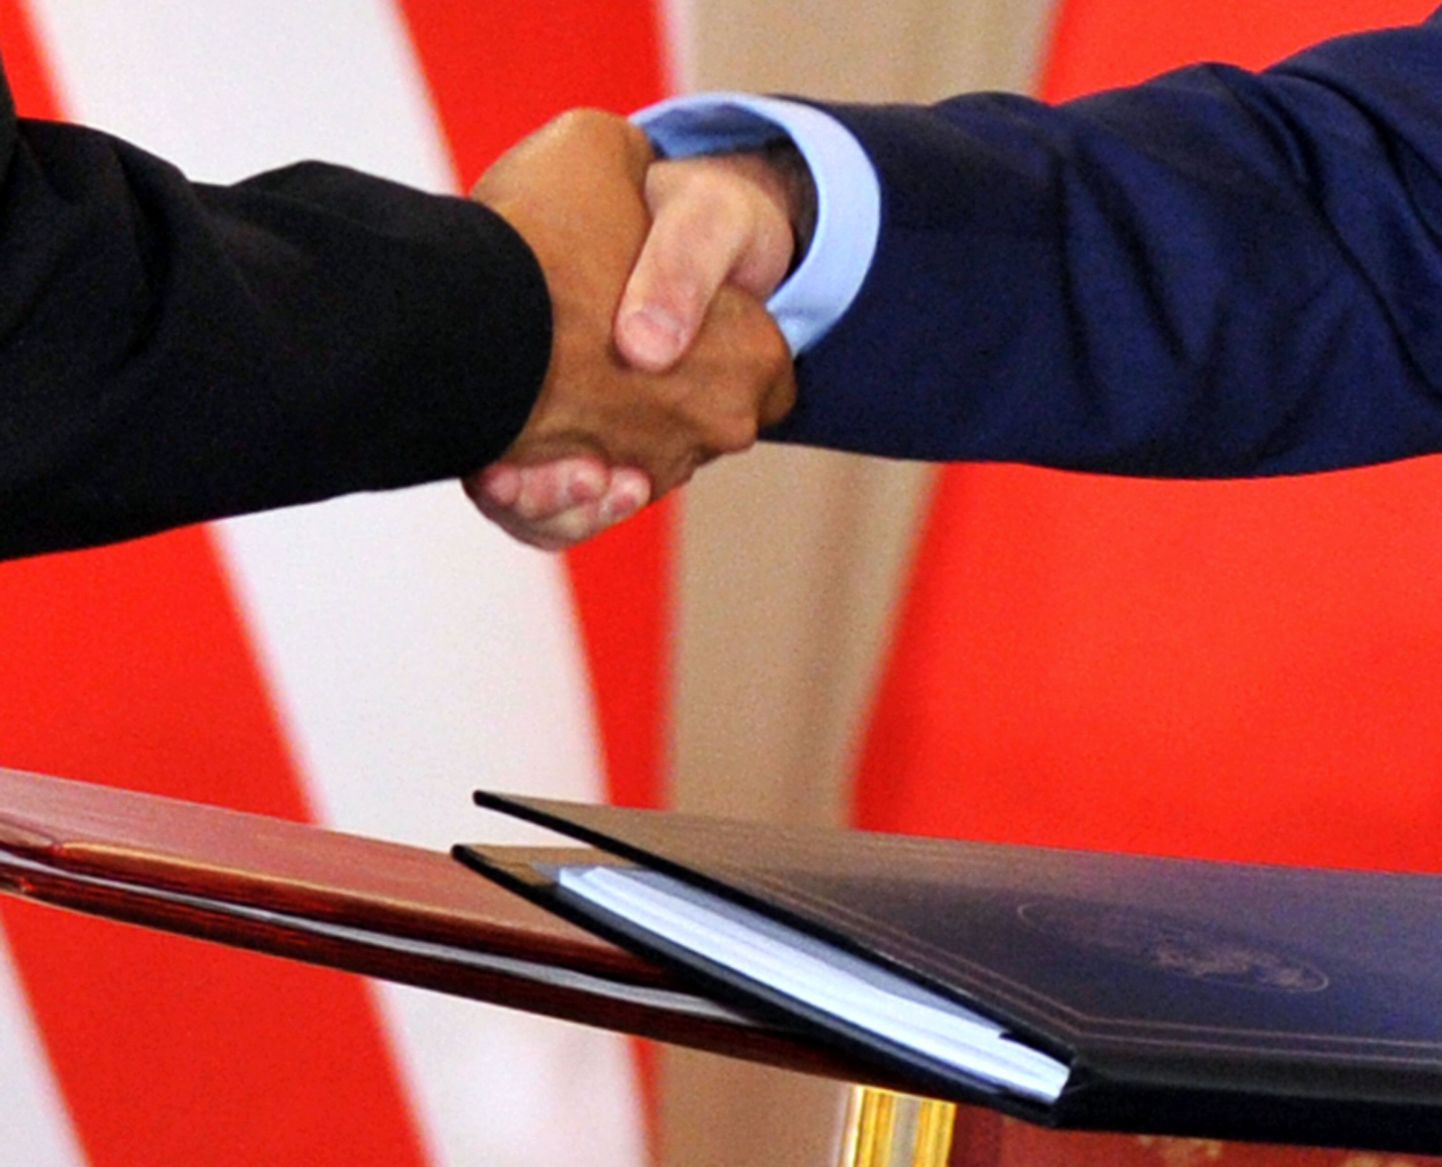 Руки Барака Обамы и Дмитрия Медведева. Снимок иллюстративый.